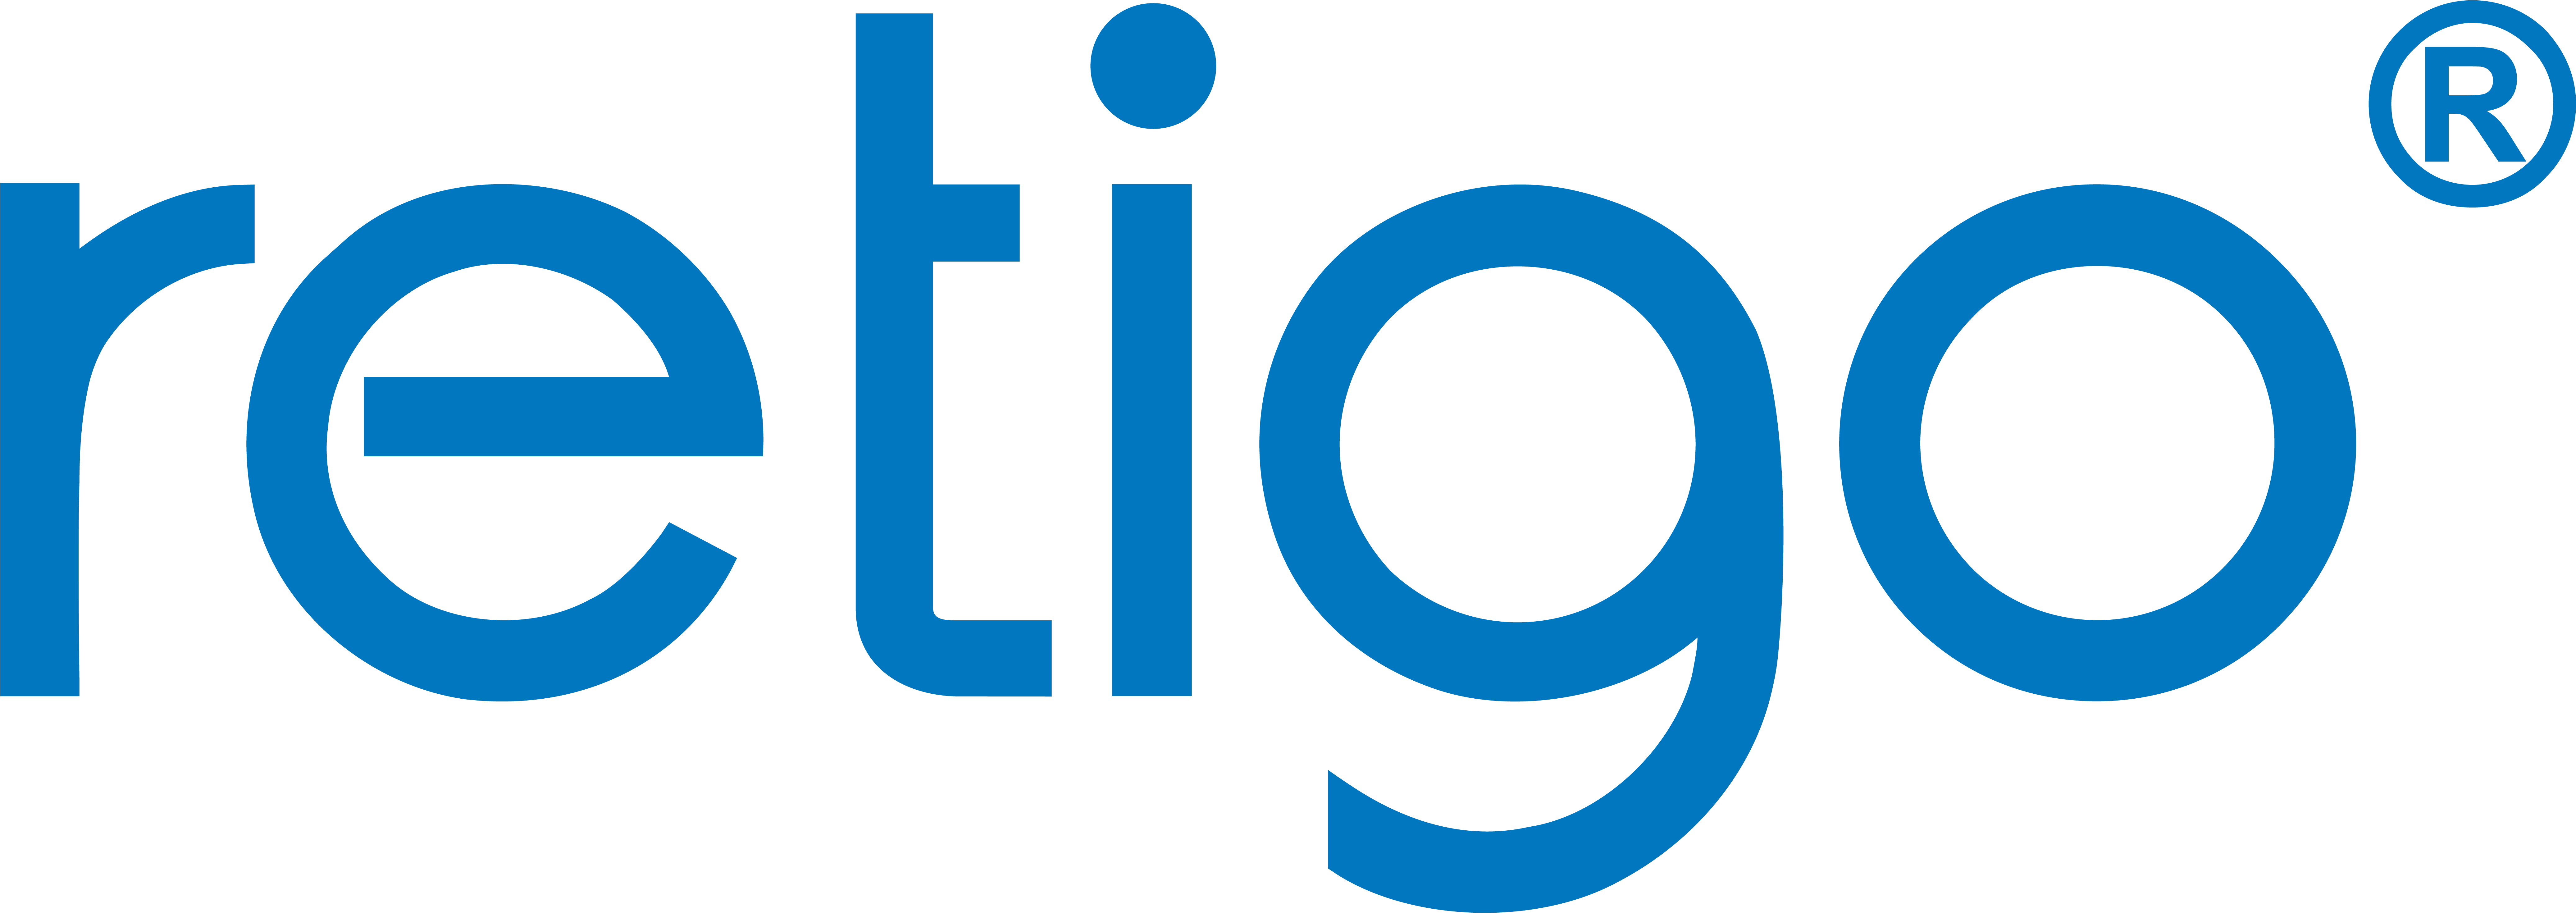 logo-retigo-blue.png